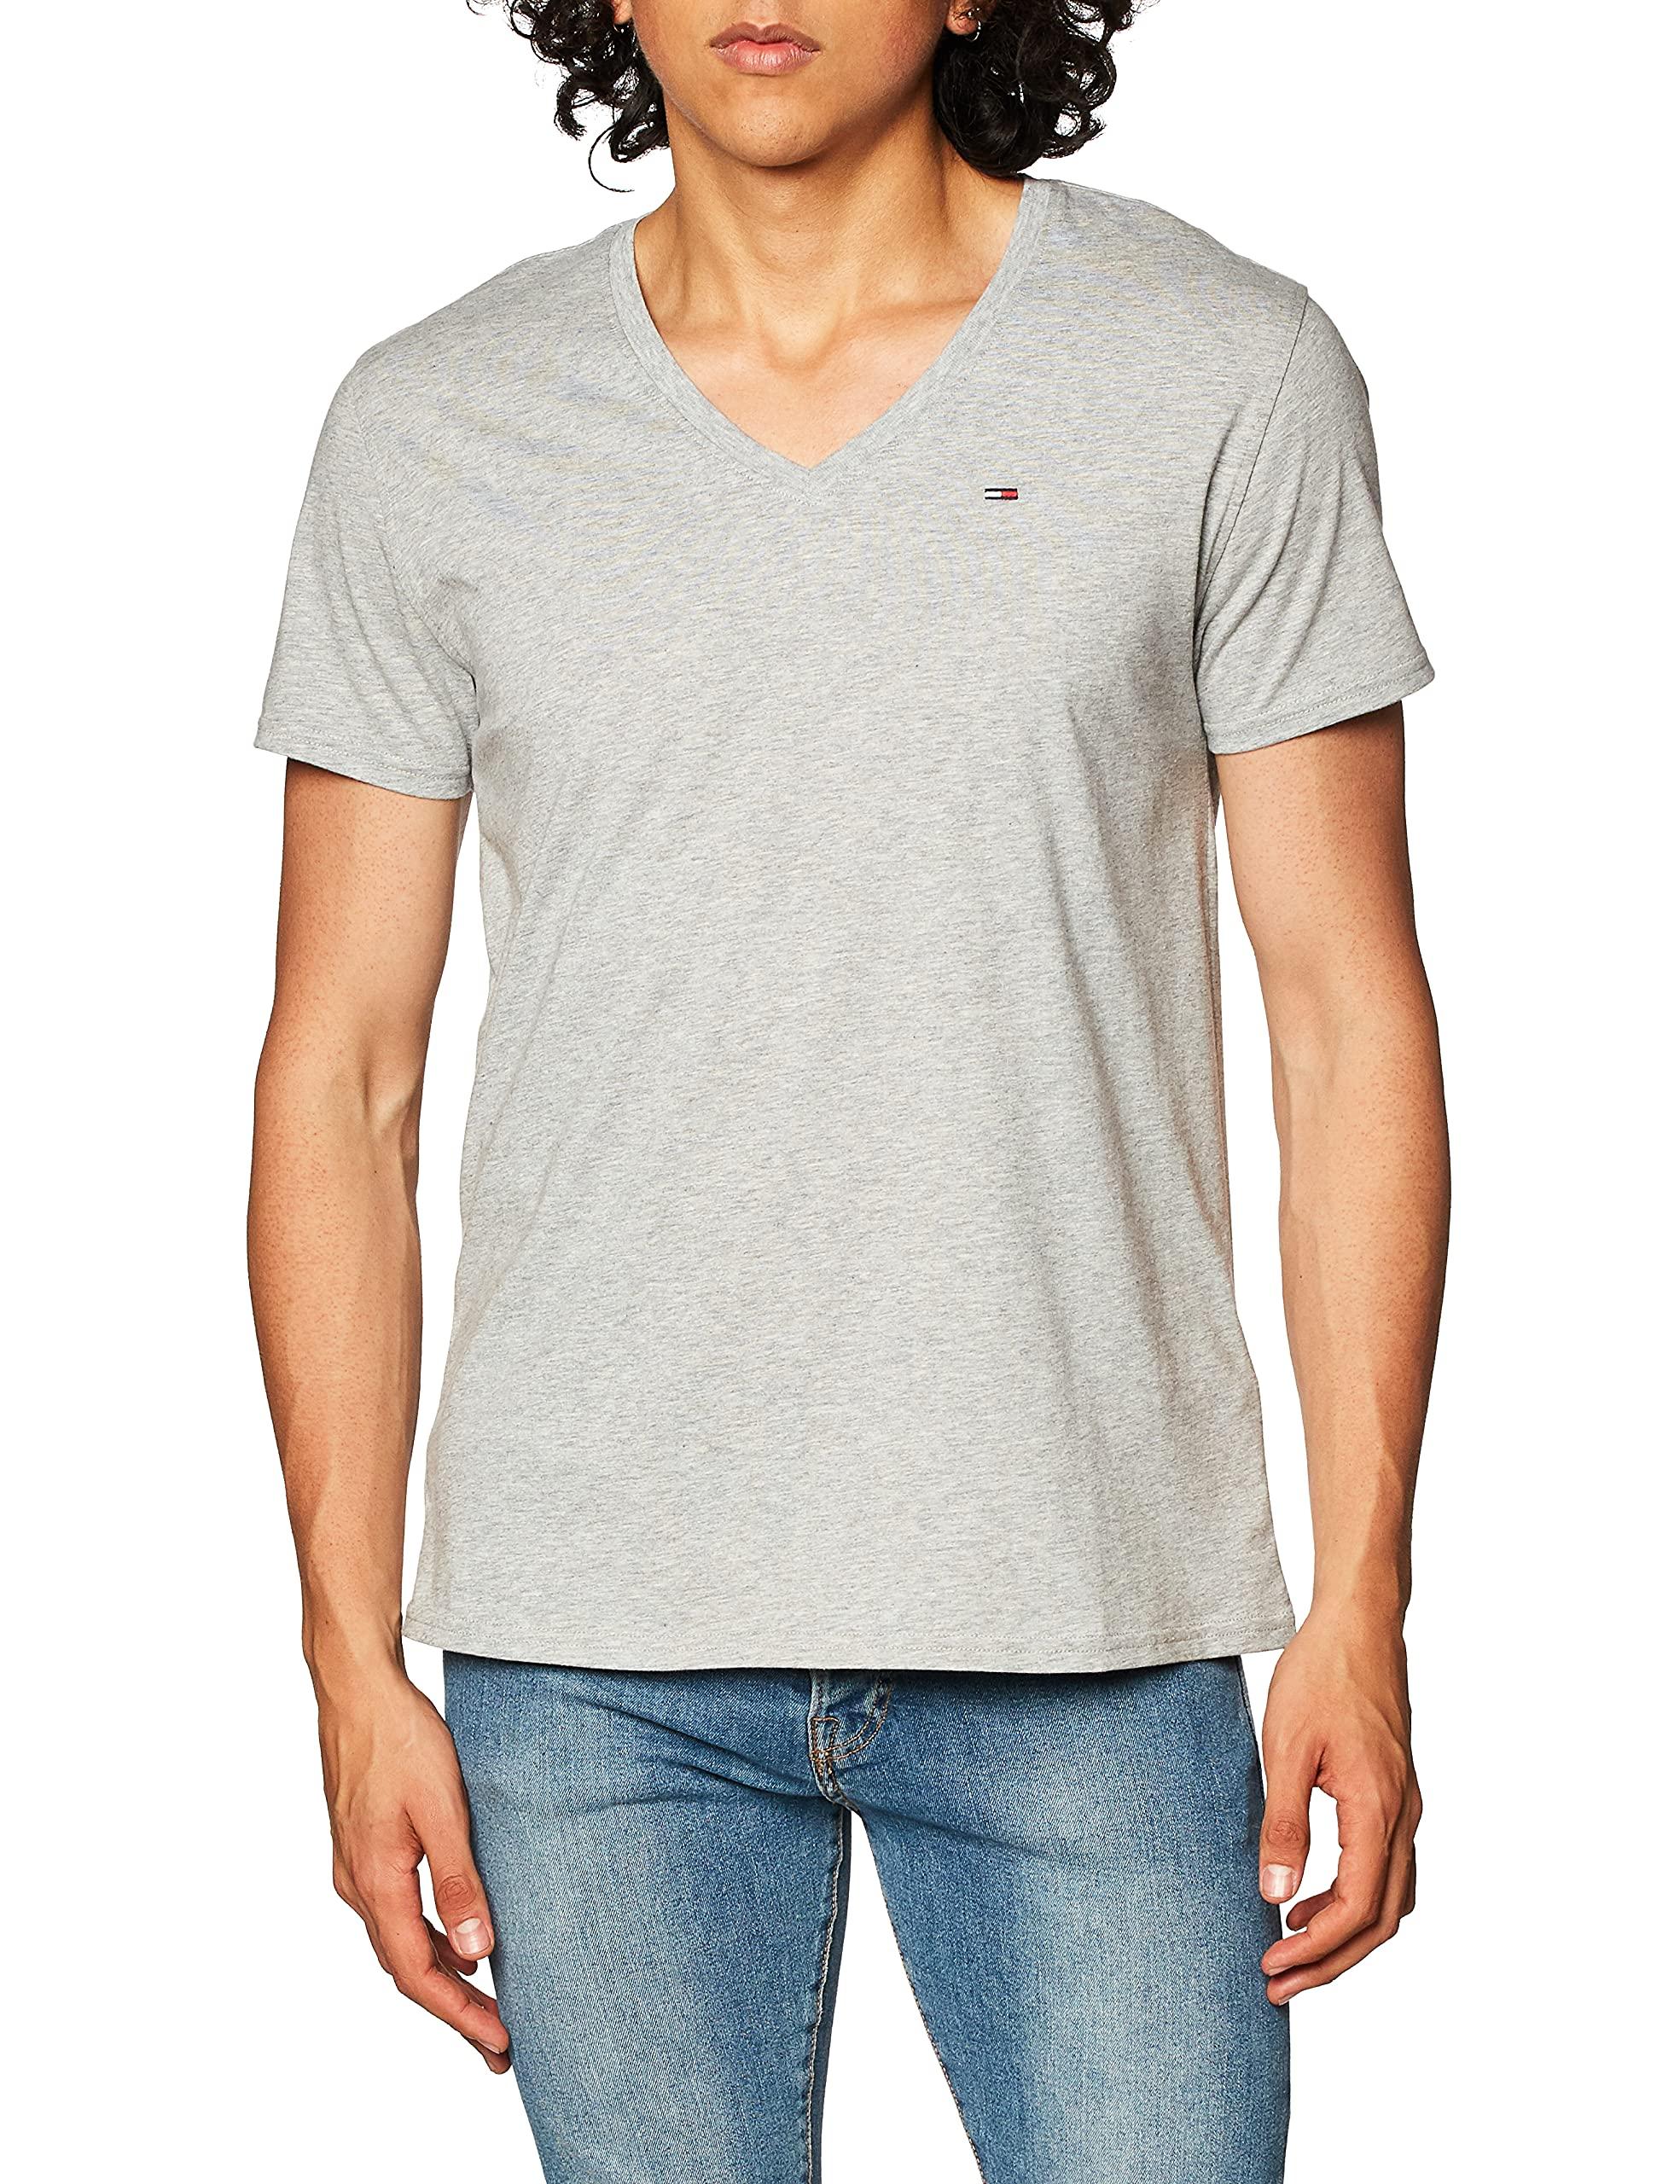 Tommy Hilfiger Denim Mens Short Sleeve V Neck T Shirt in Light Grey Heather  (Gray) for Men - Save 4% | Lyst